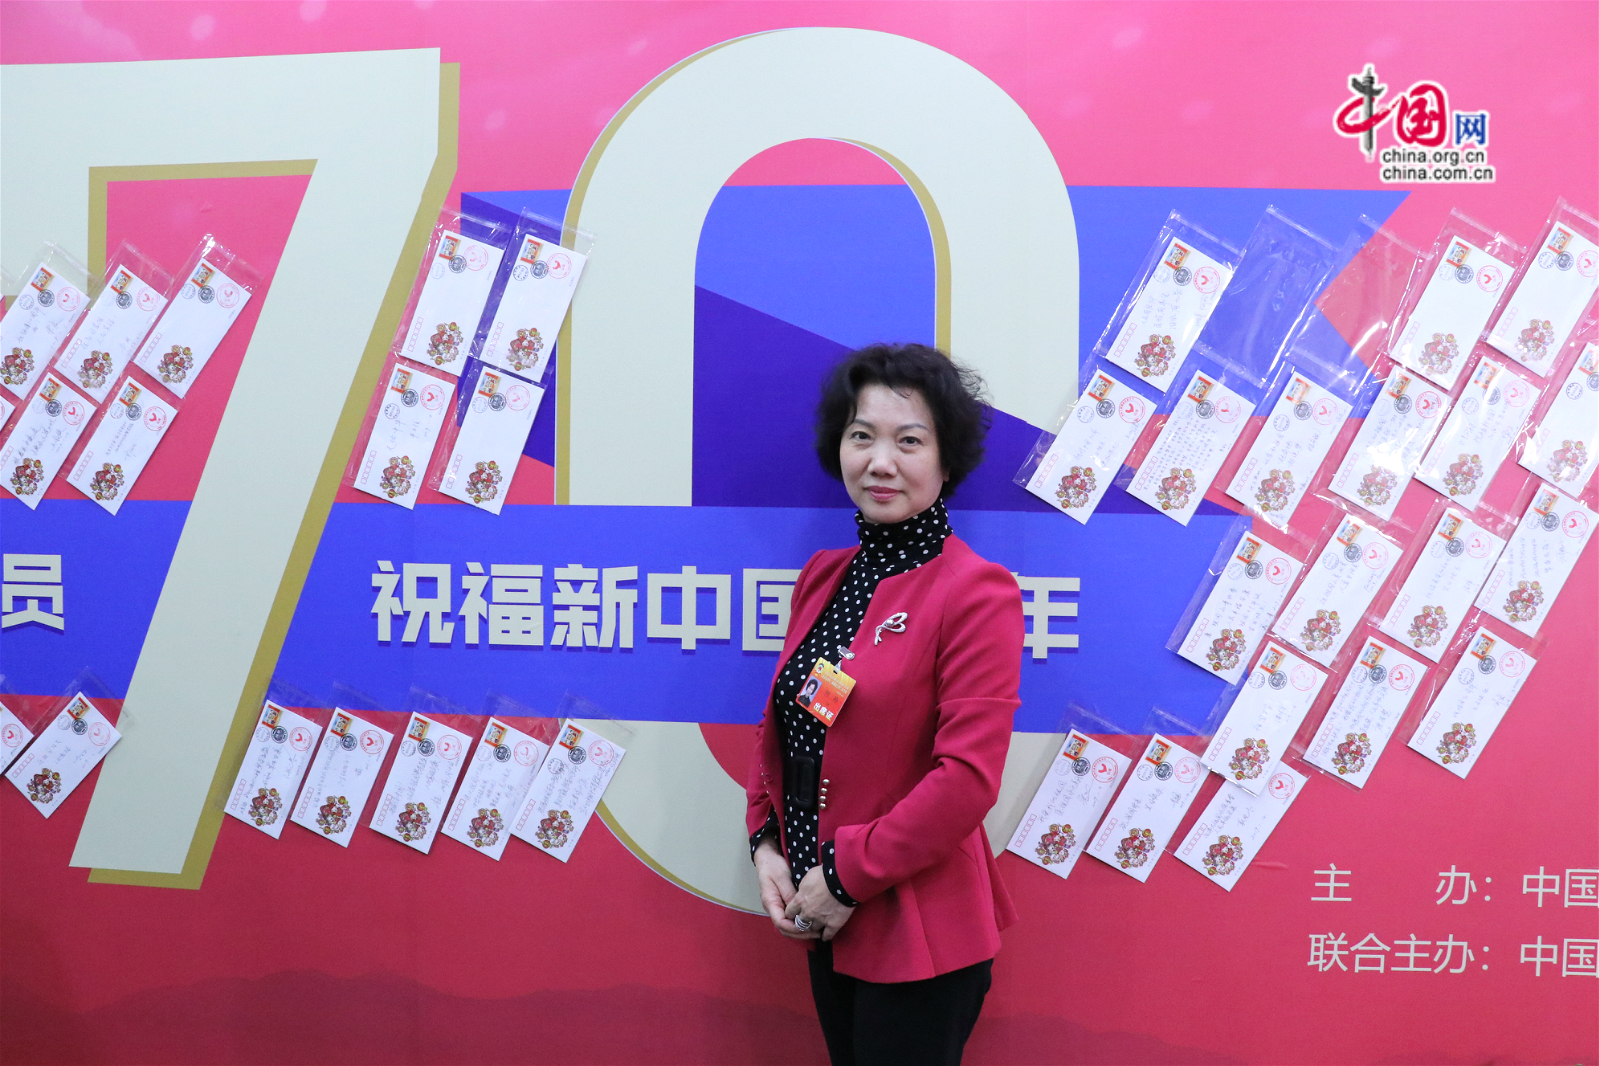 北京市政协委员何玲在70年主题墙前留影。中国网记者胡俊摄